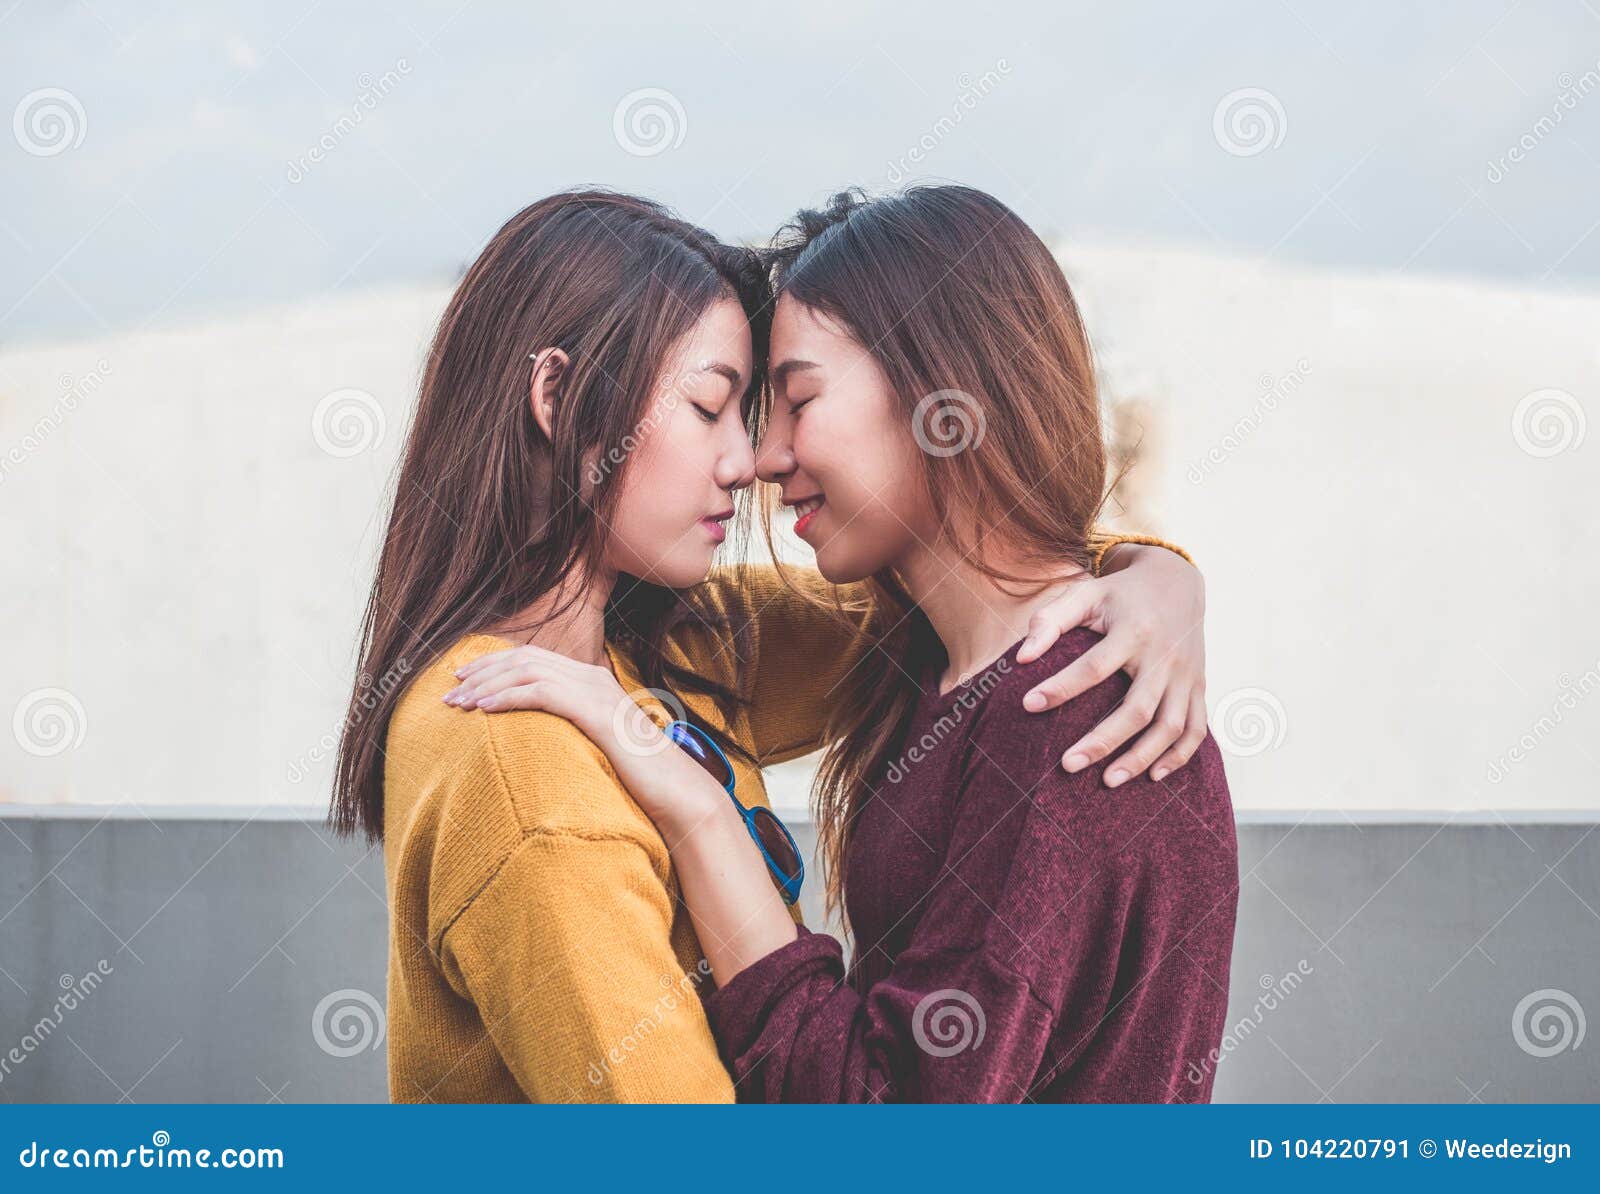 Japanese Girls Lesbian Kissing